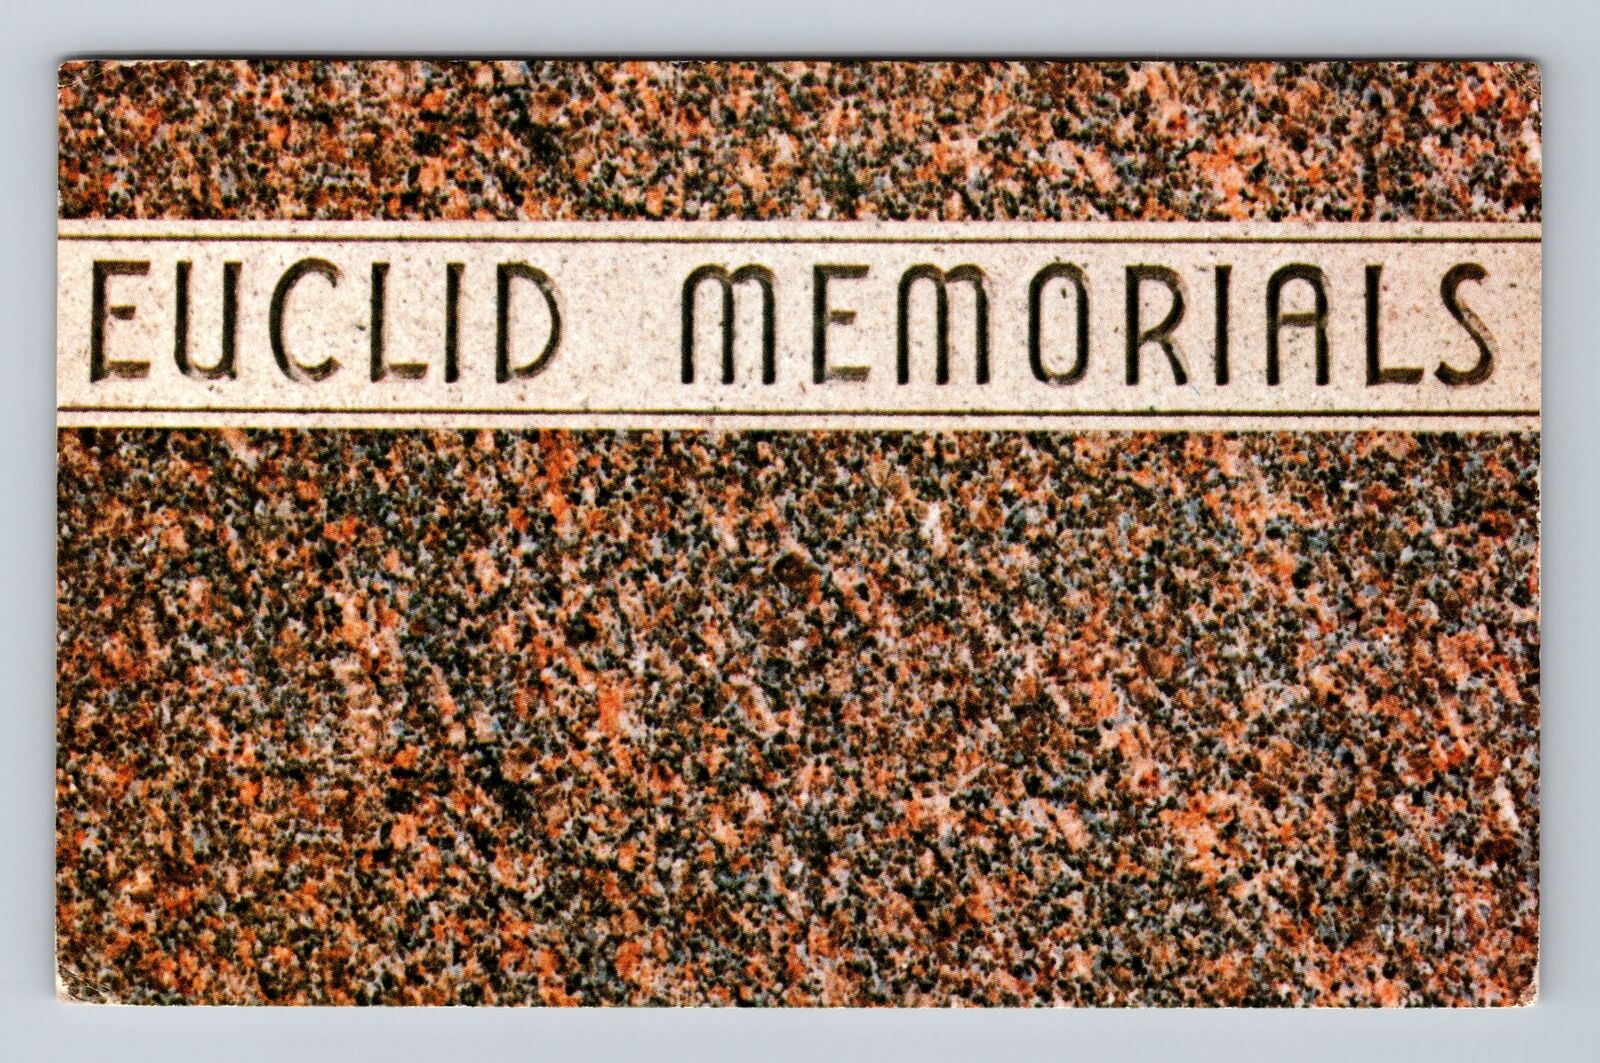 Euclid OH-Ohio, Euclid Memorials, Advertising, Antique Vintage Postcard